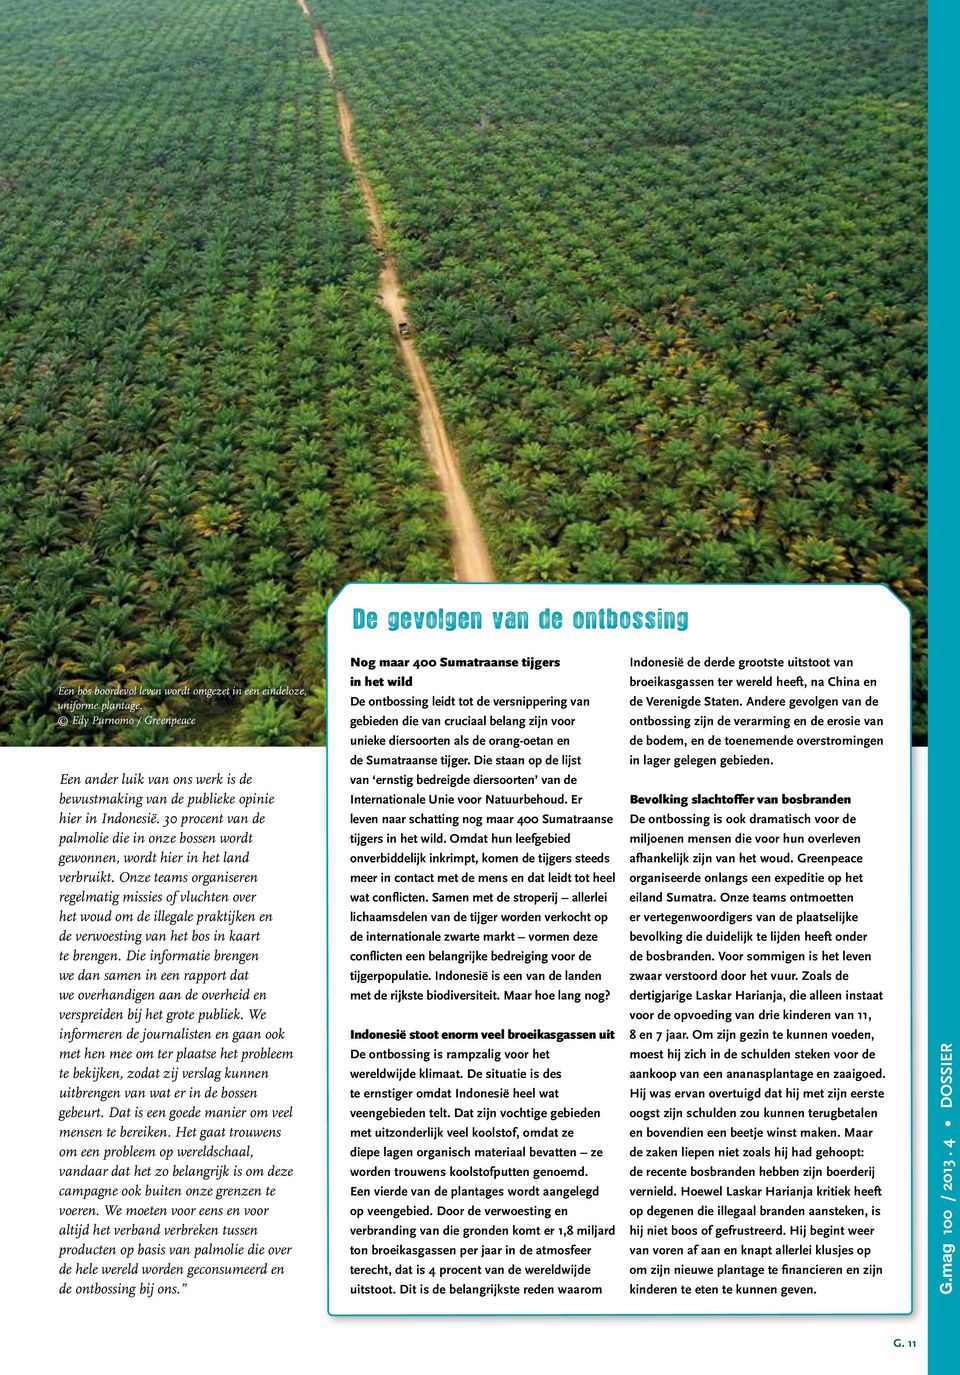 30 procent van de palmolie die in onze bossen wordt gewonnen, wordt hier in het land verbruikt.